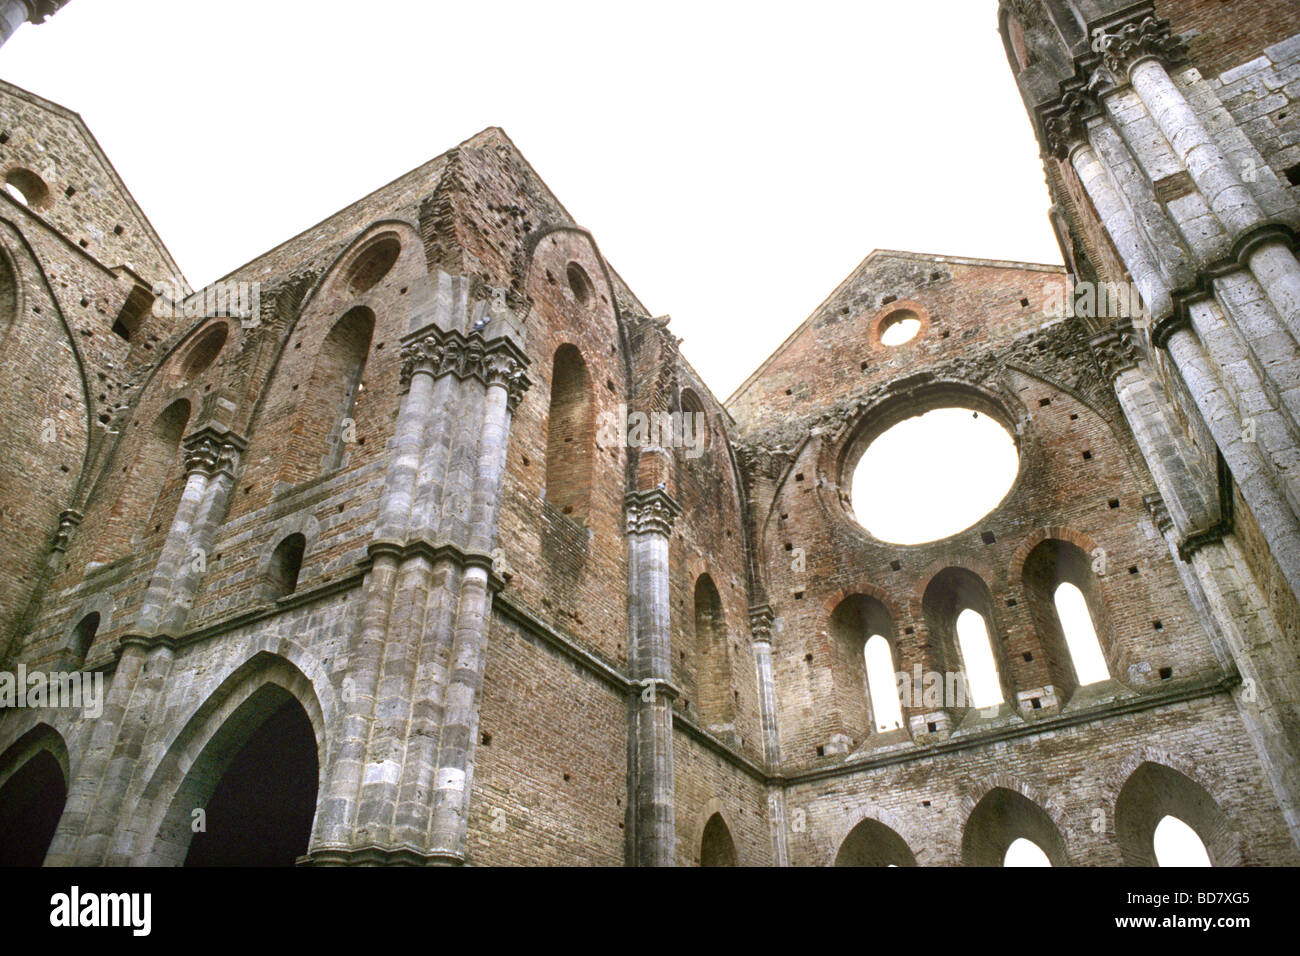 Abbey of San Galgano Siena Italy Stock Photo